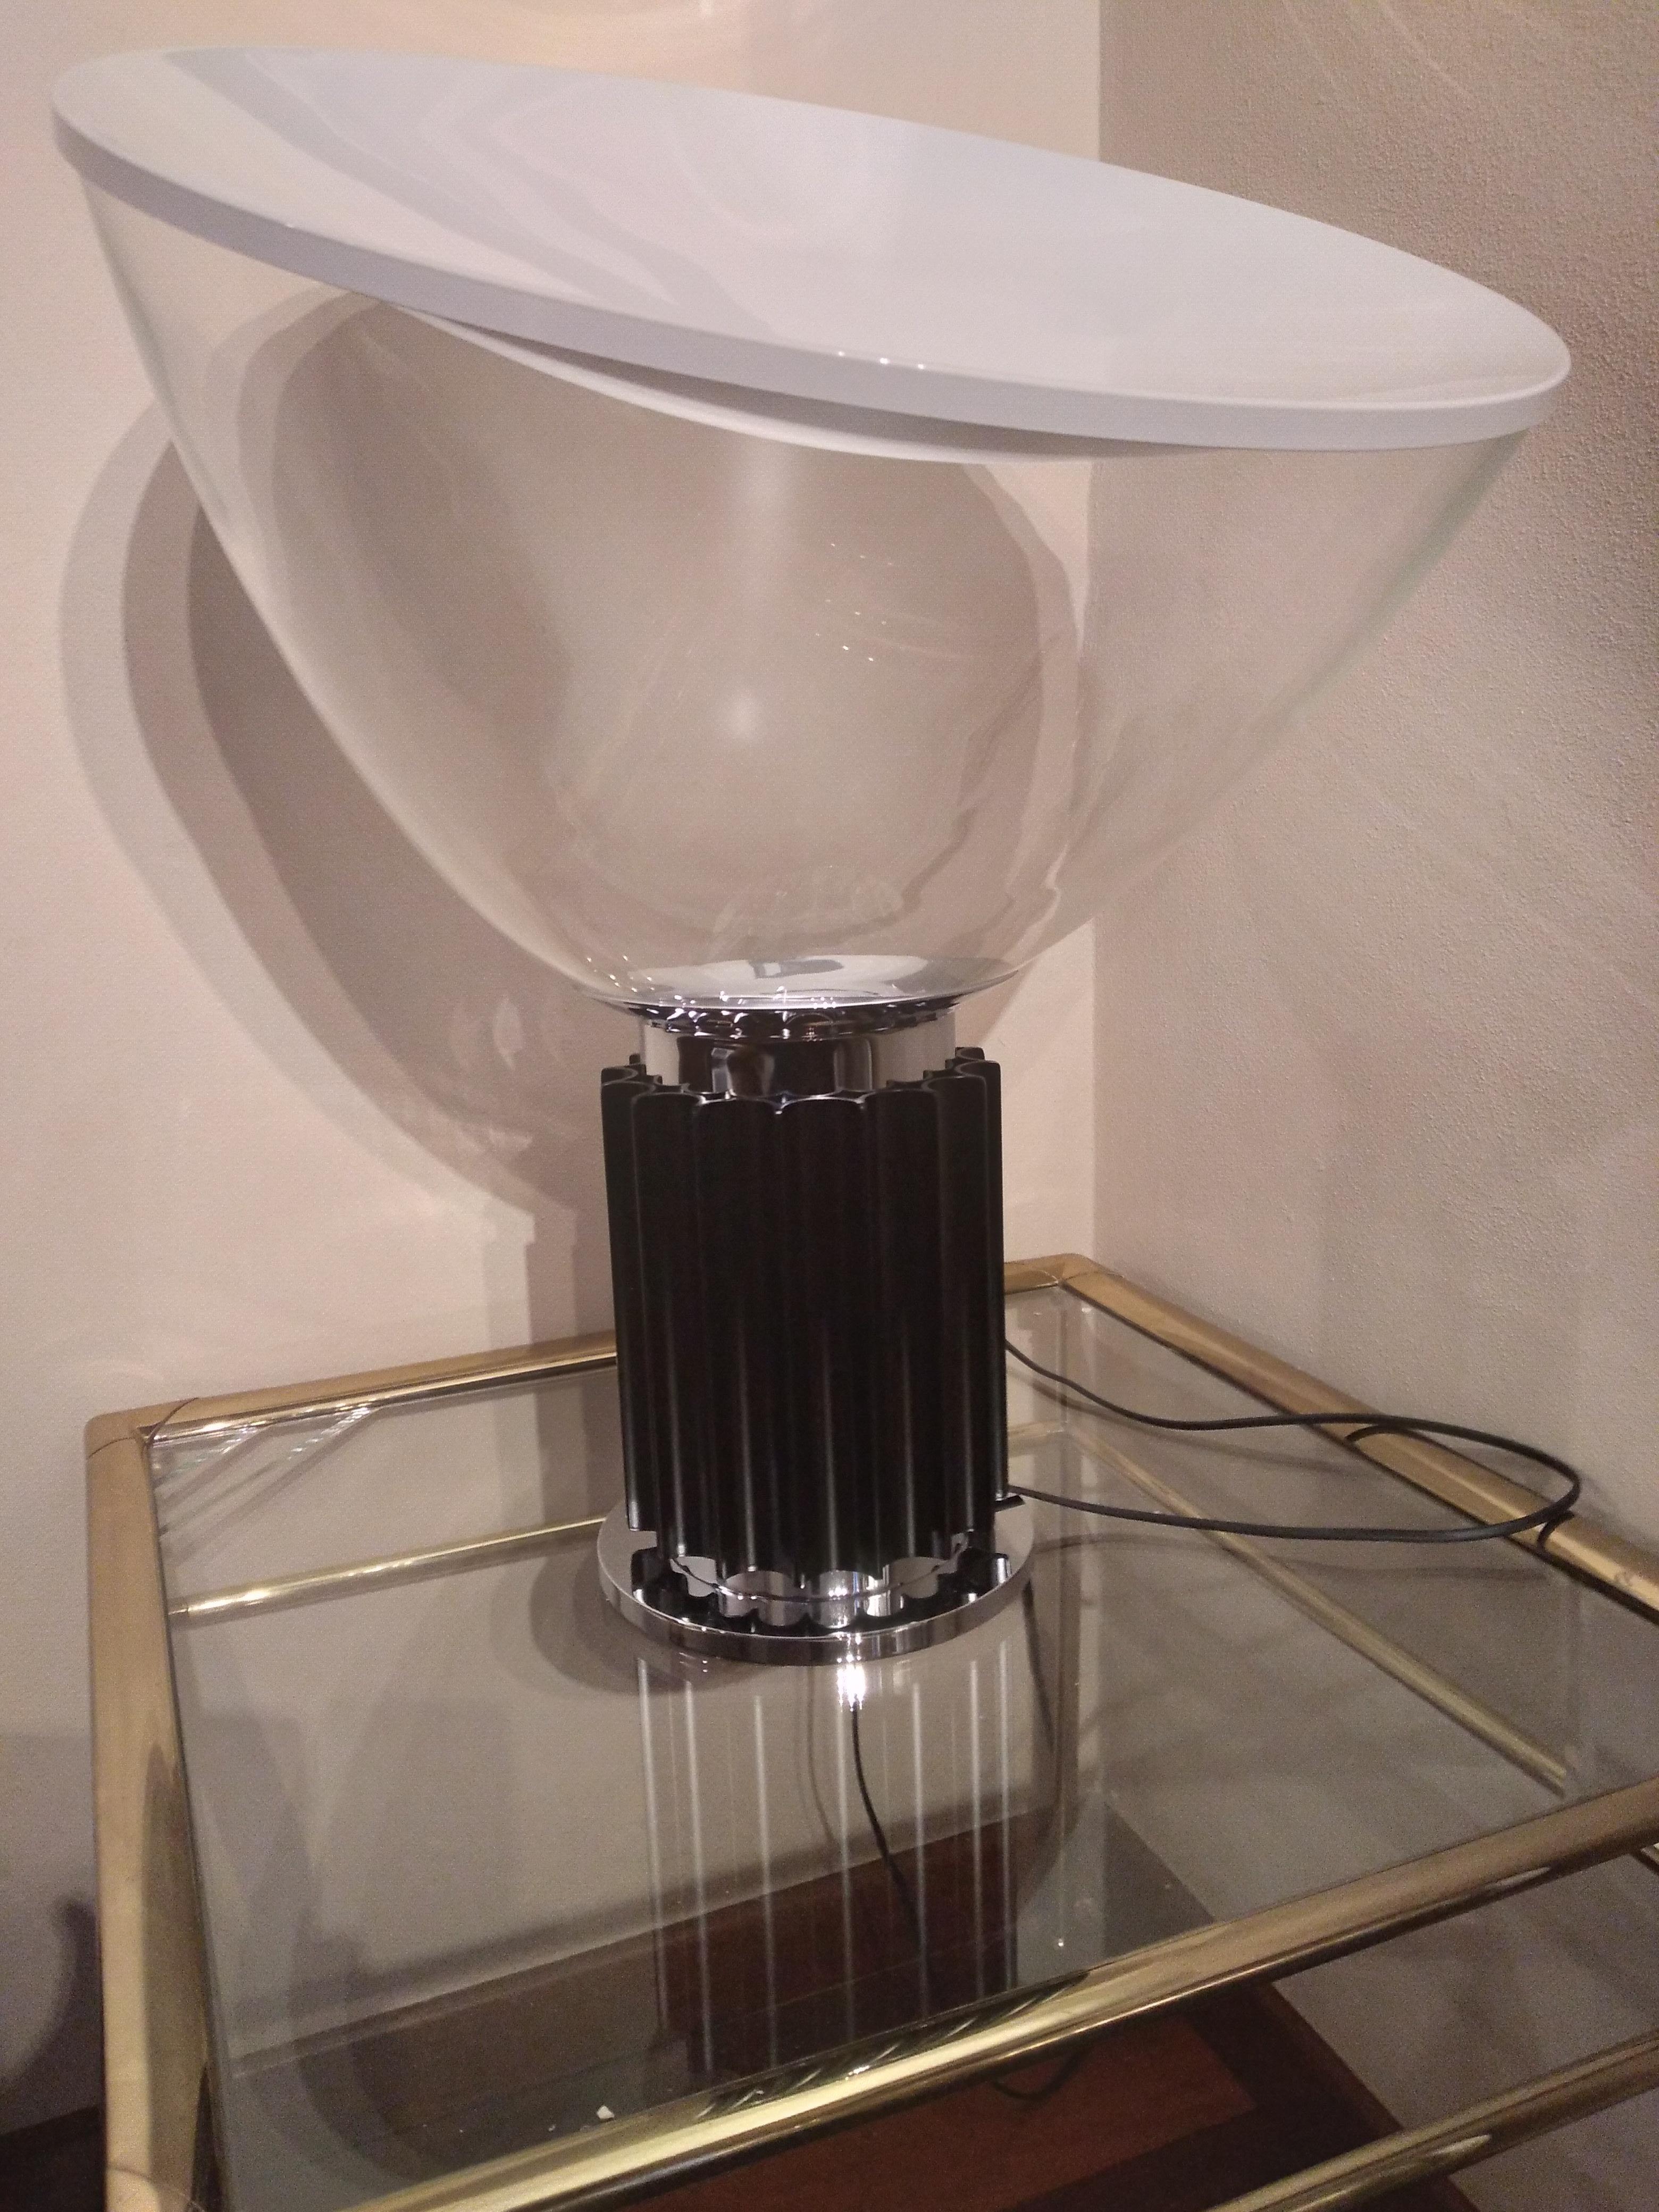 Taccia Lampe von Achille & Pier Giacomo Castiglioni von Flos Hersteller
Die Tisch-/Bodenleuchte Modell Taccia hat einen konkaven Reflektor aus gedrehtem Aluminium mit einer matten Oberfläche. Der Sockel ist aus stranggepresstem Aluminium gefertigt